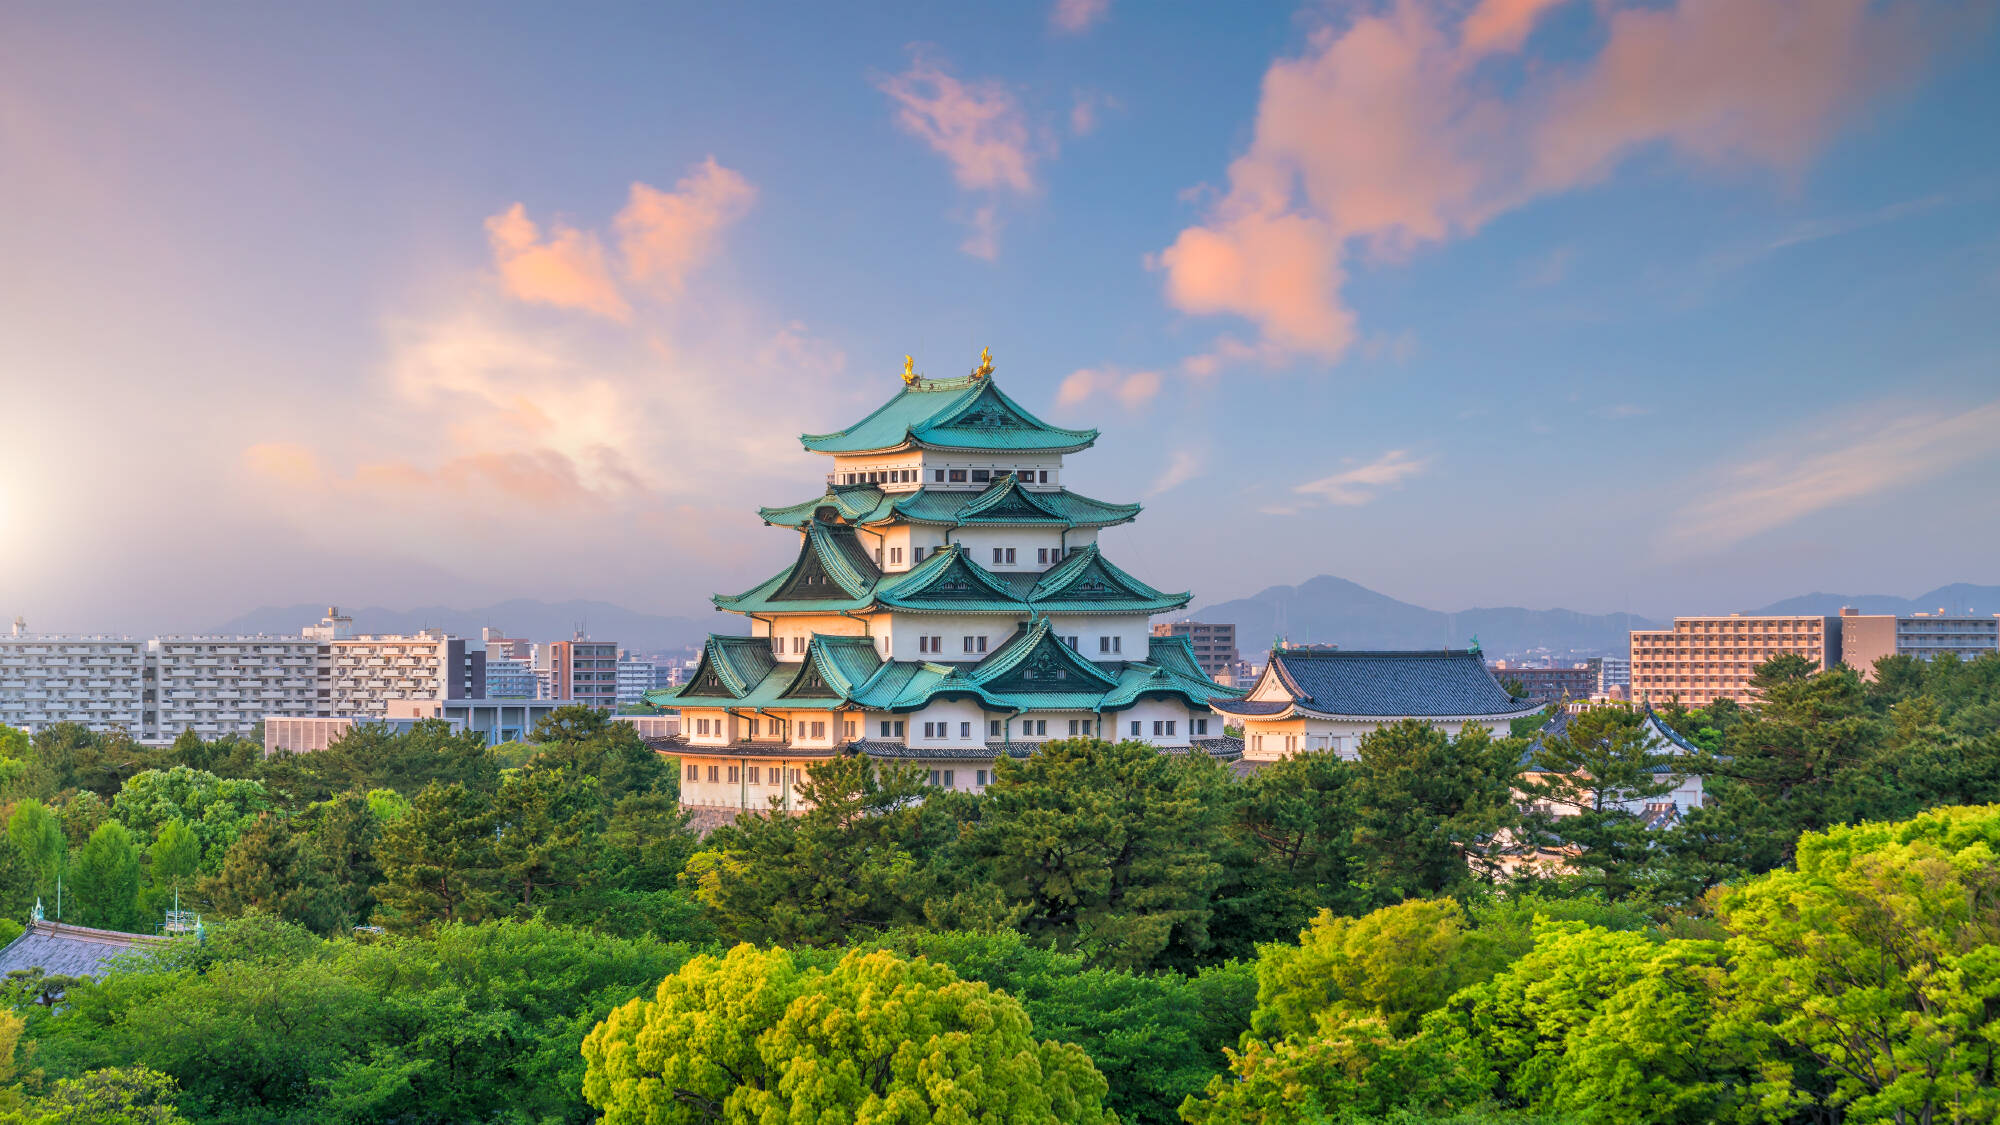 Nagoya Reisen und Billigflug - Japan - Hotels und Flug nach Nagoya